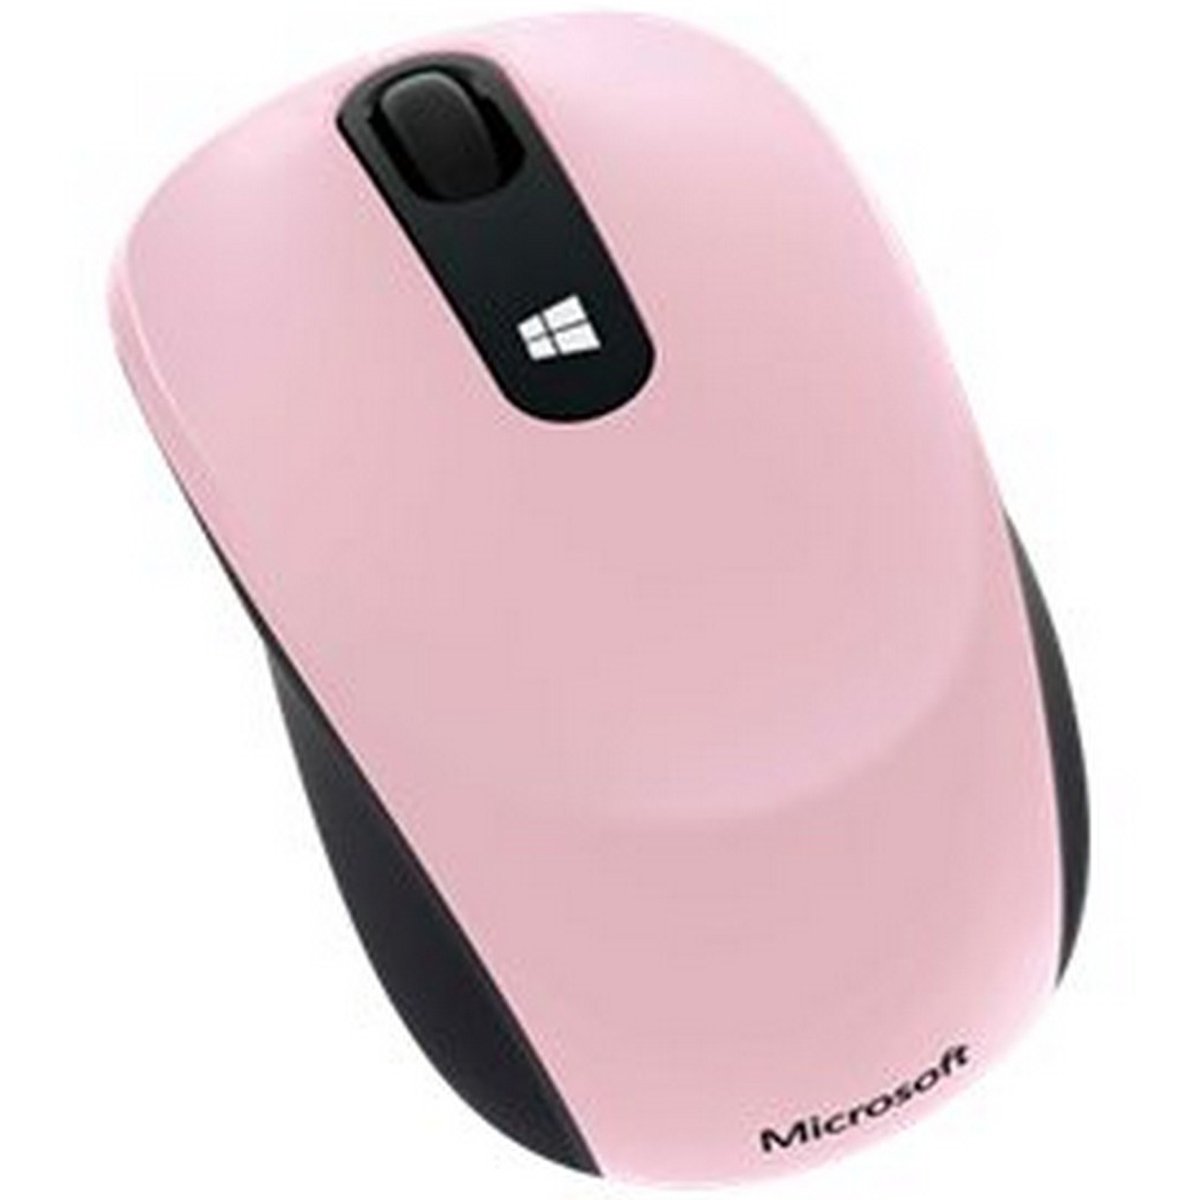 Microsoft Wireless Mouse 43U00